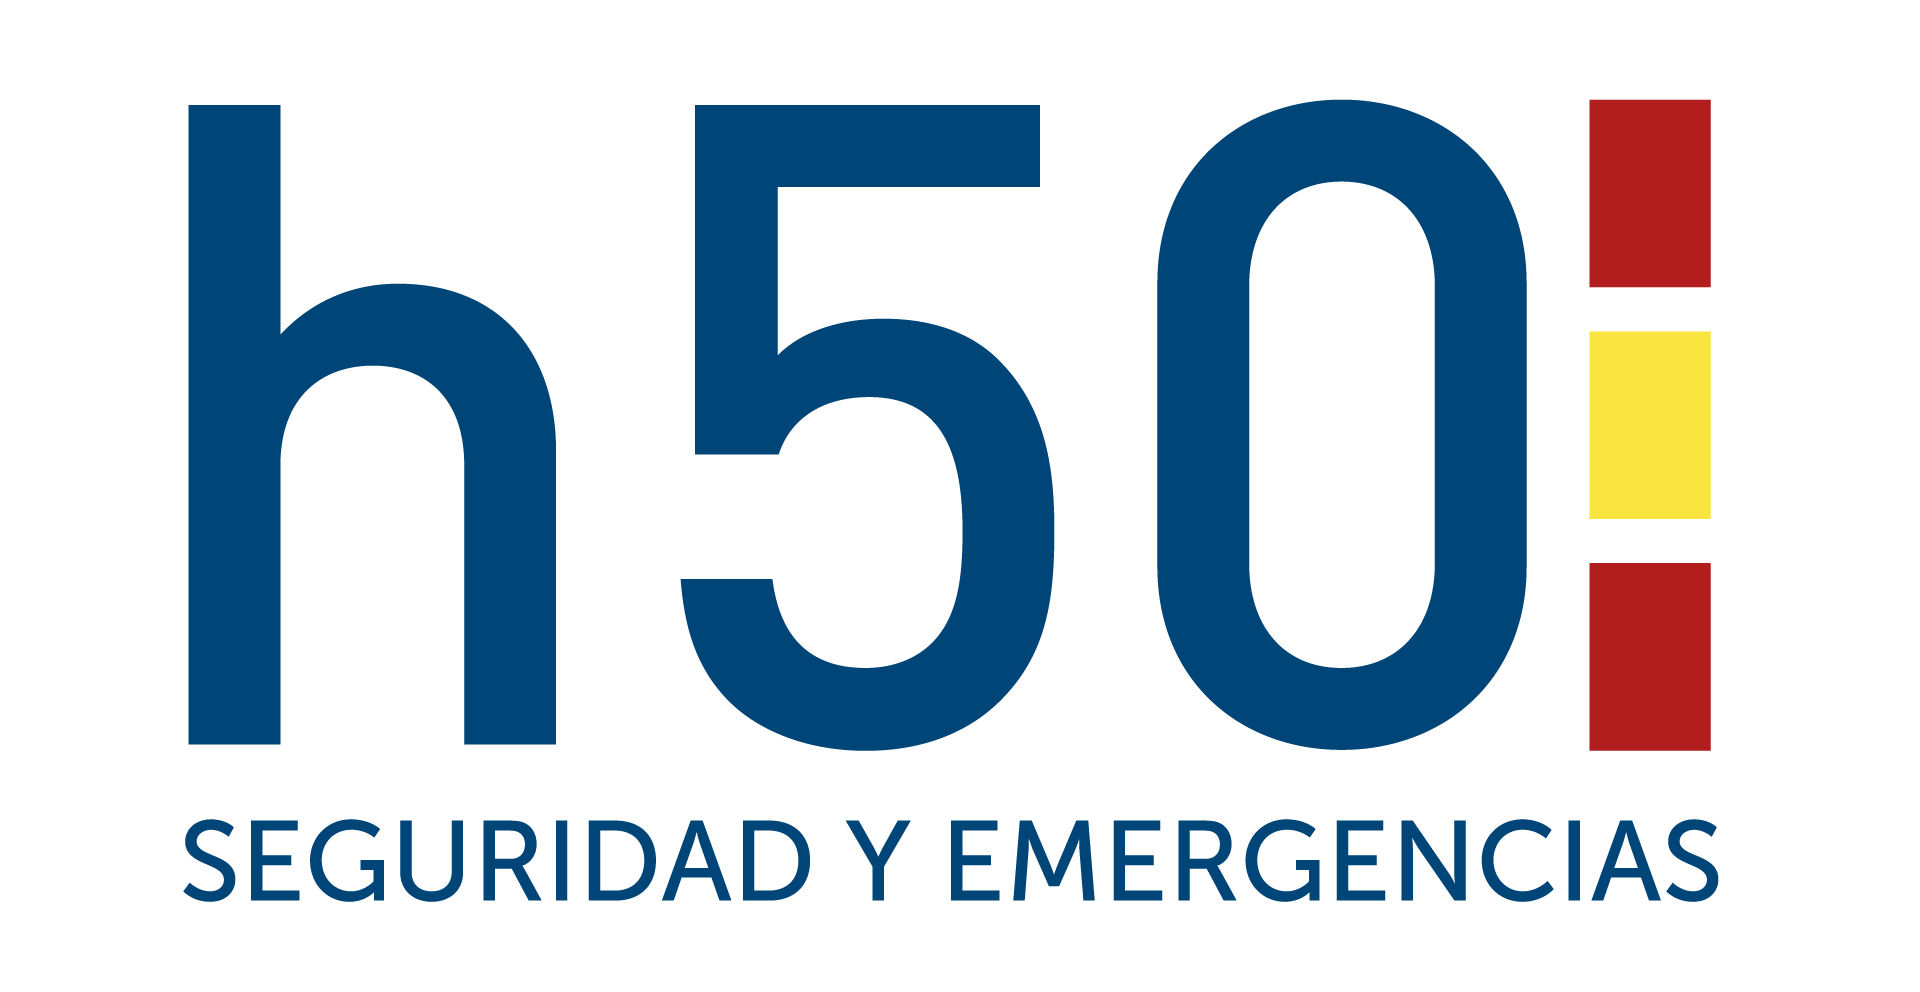 h50 Digital Policial – Noticias, sucesos y actualidad en España